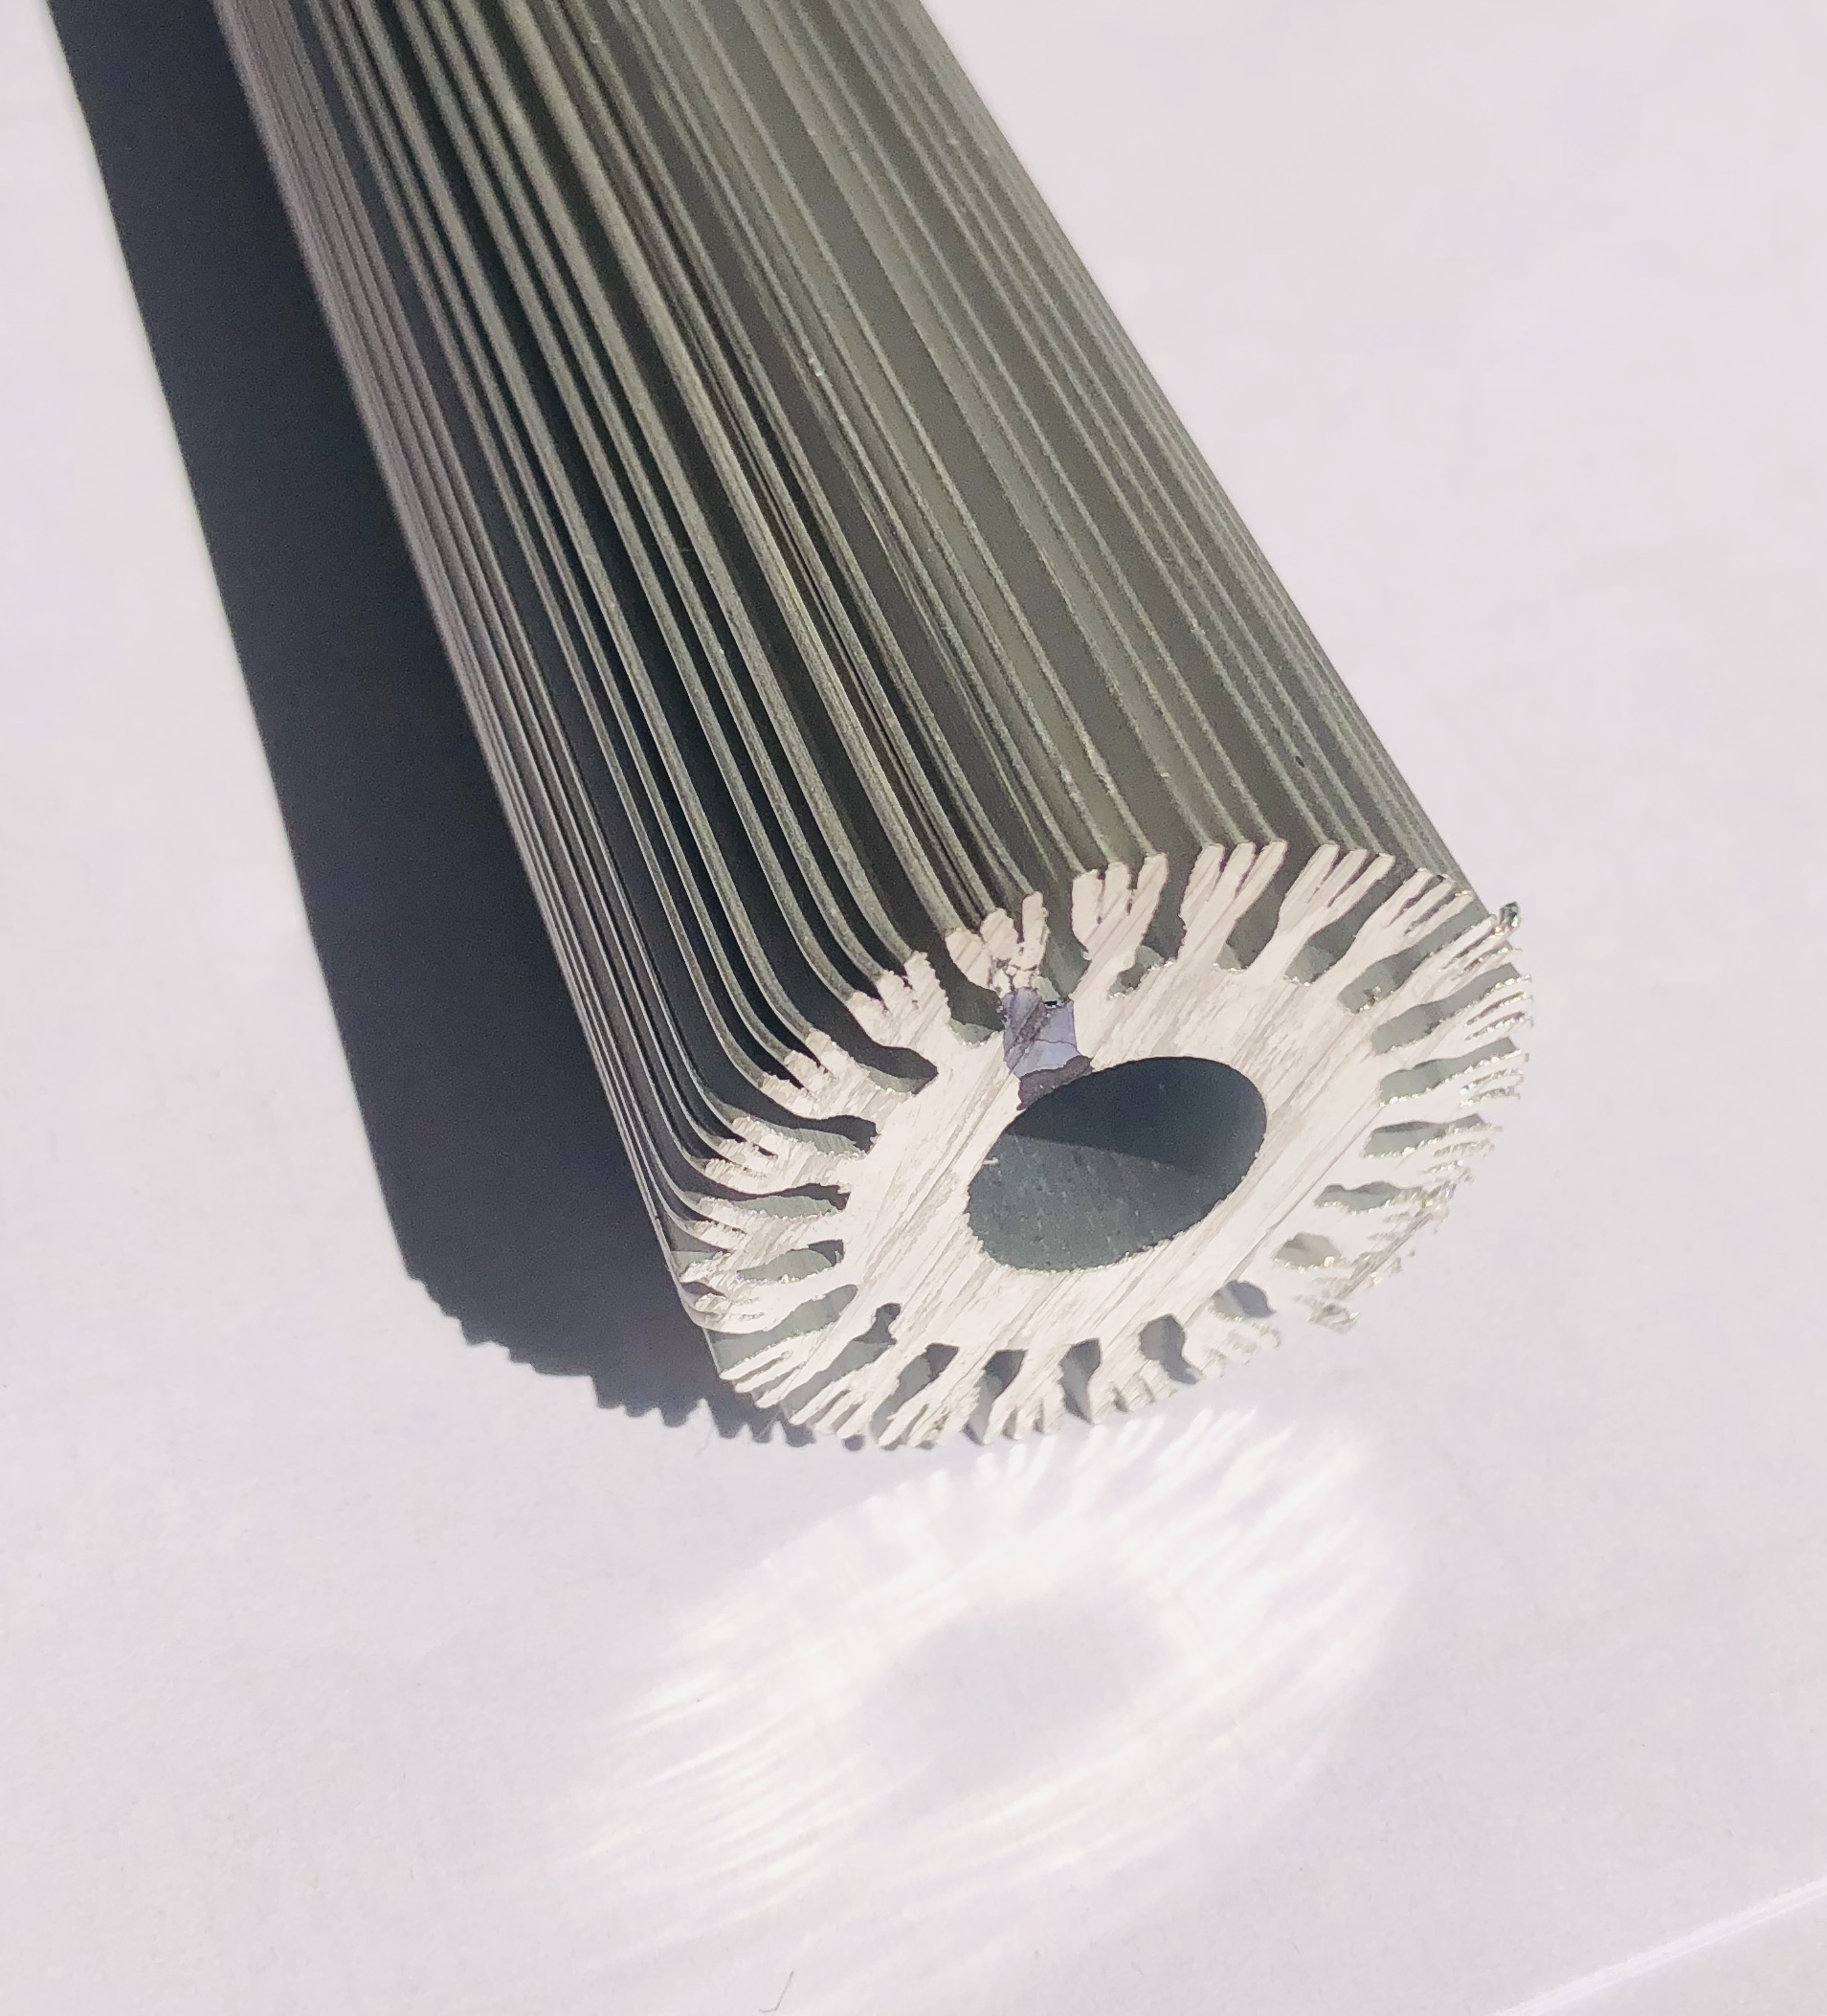 Perfil de extrusão de alumínio para dissipador de calor/radiador